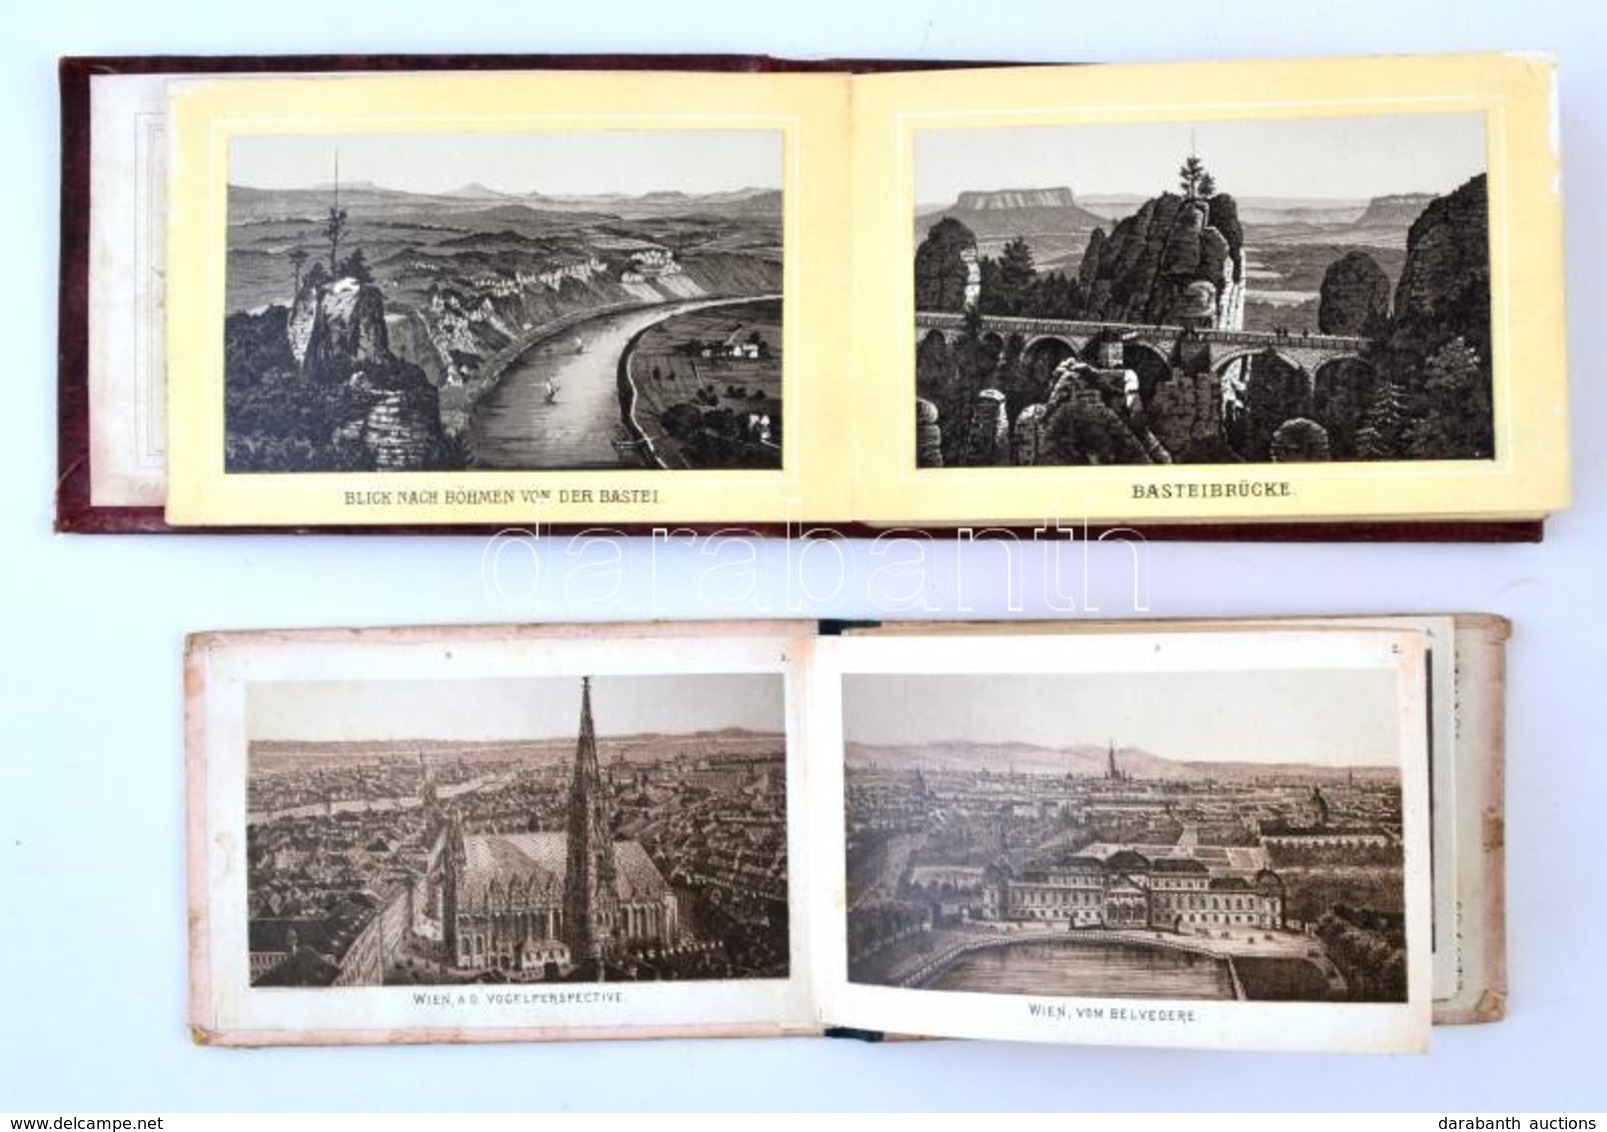 Cca 1873 Album Von Wien, 10 Képet Tartalmazó Leporelló Bécsről, Közte A Bécsi 1873-as Világkiállítás épületeinek Fotóiva - Ohne Zuordnung